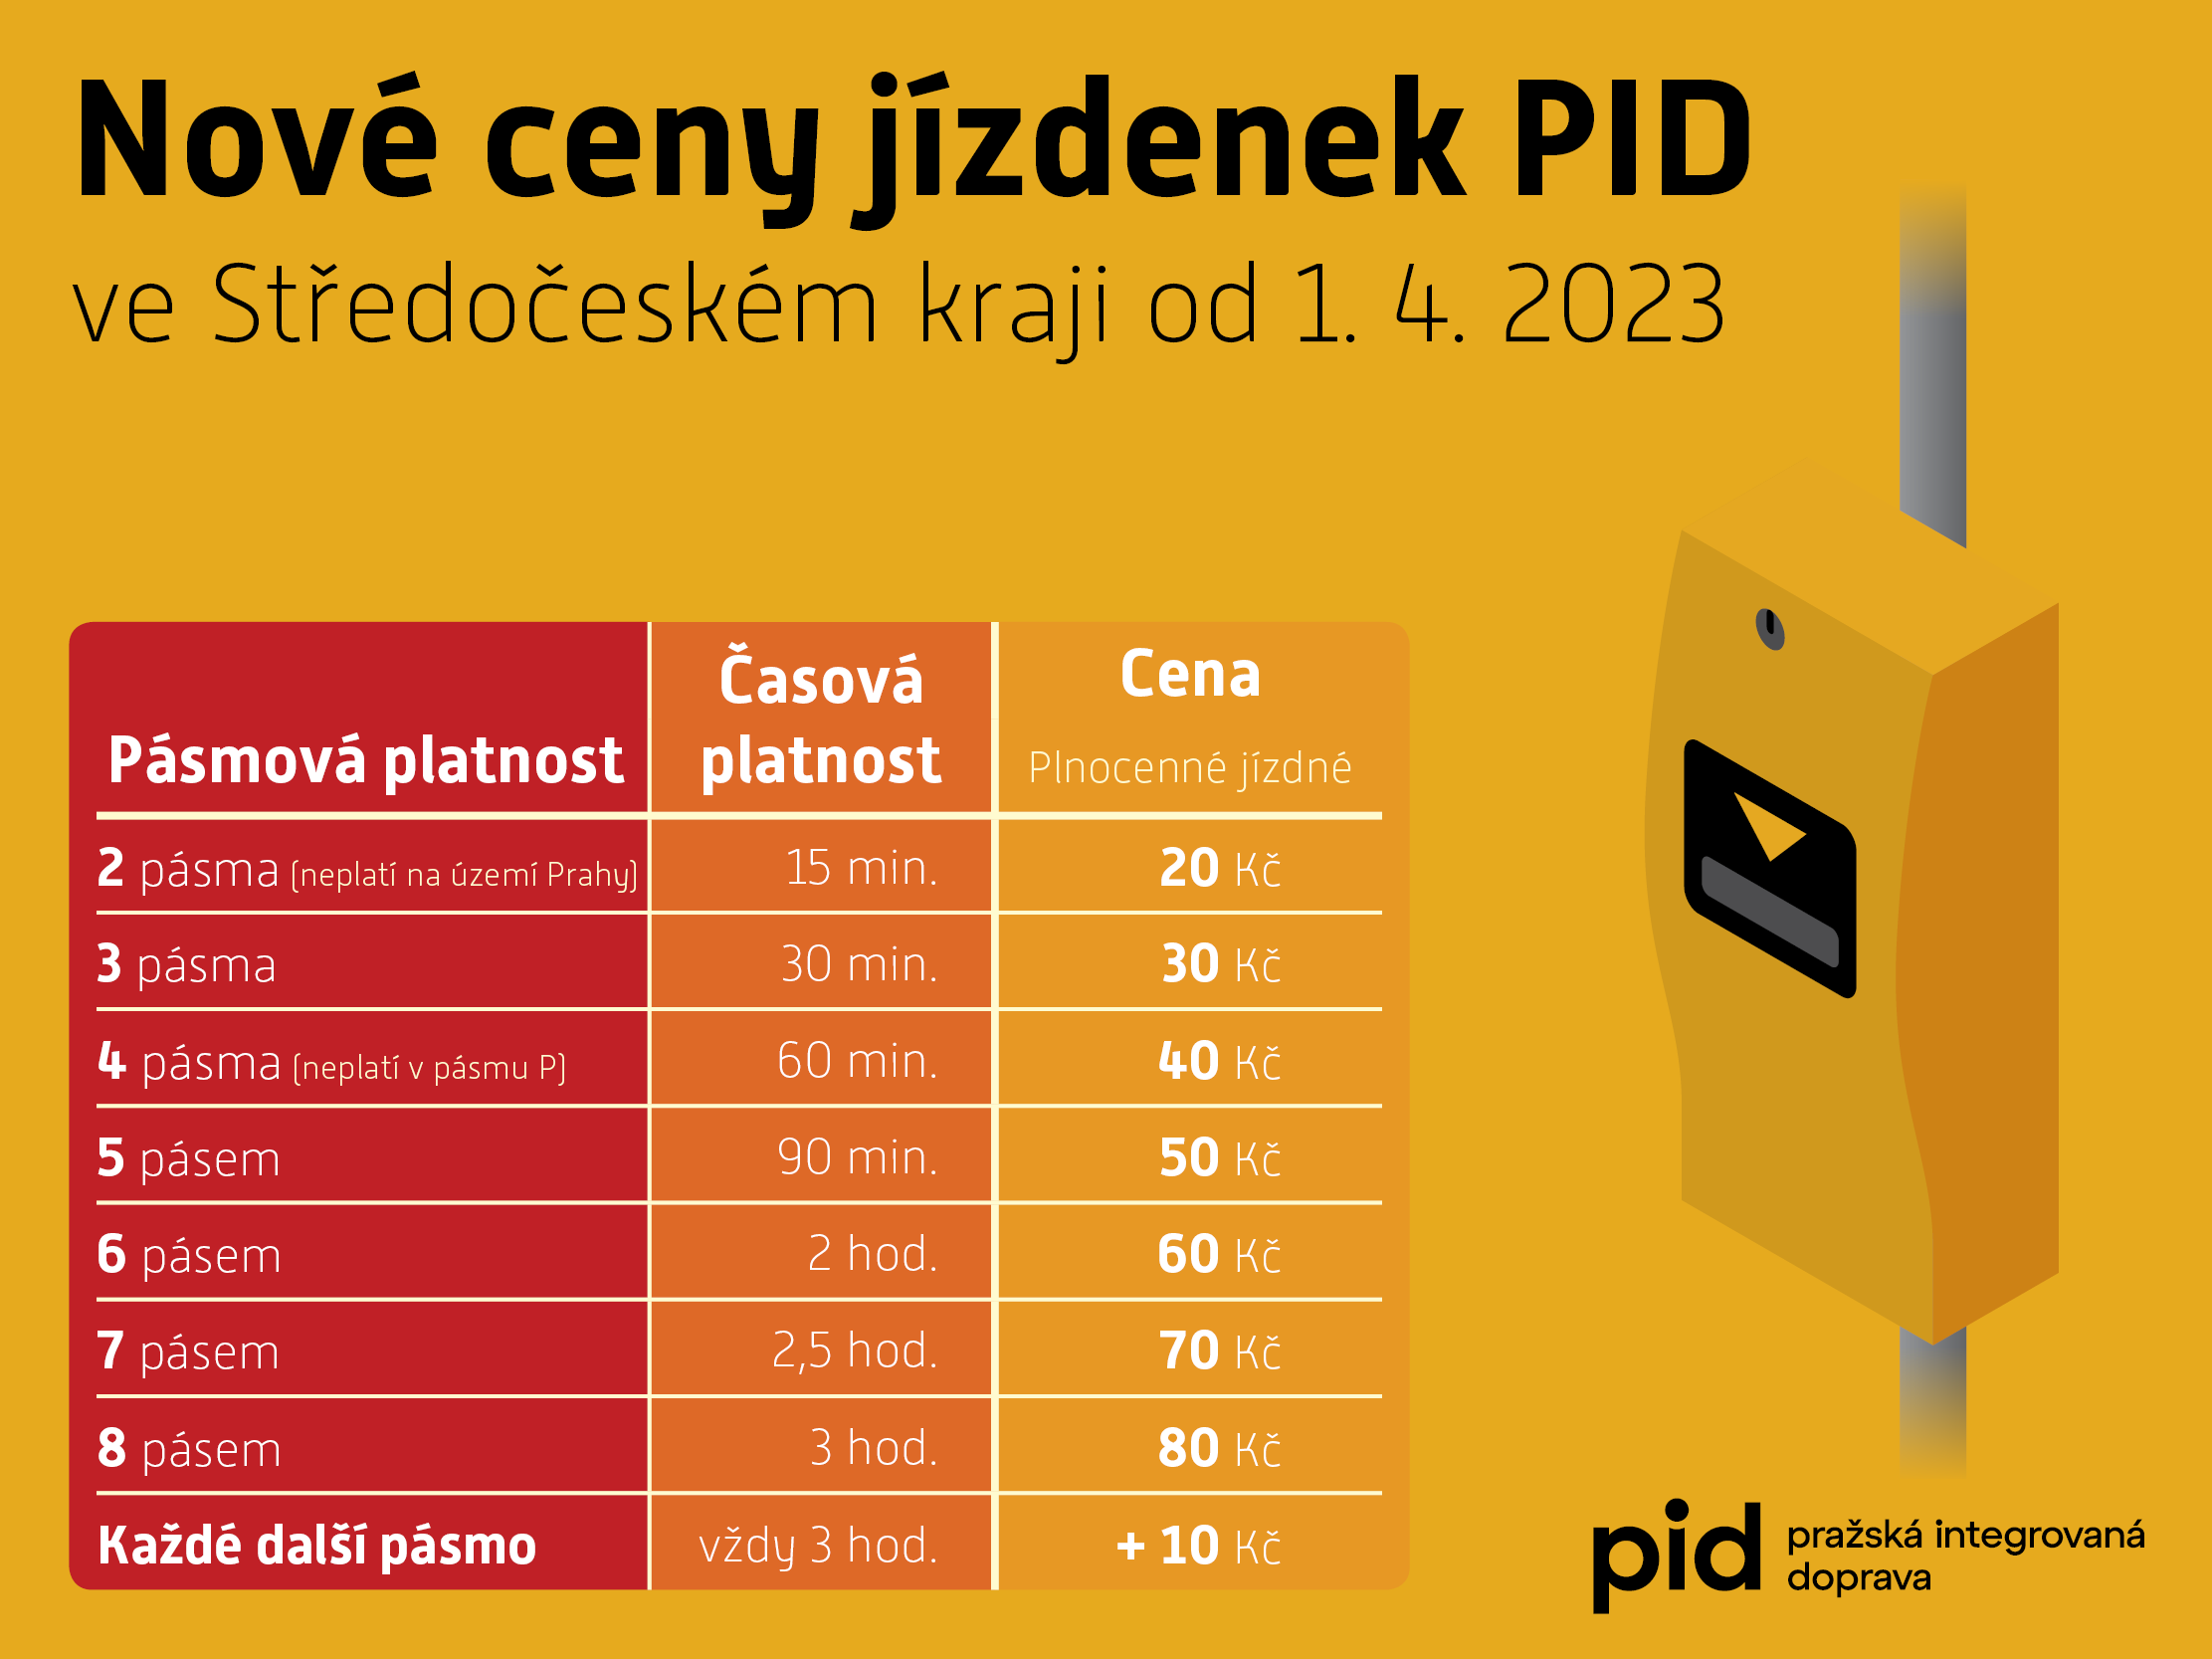 Nové ceny jízdného PID ve Středočeském kraji od 1. 4. 2023